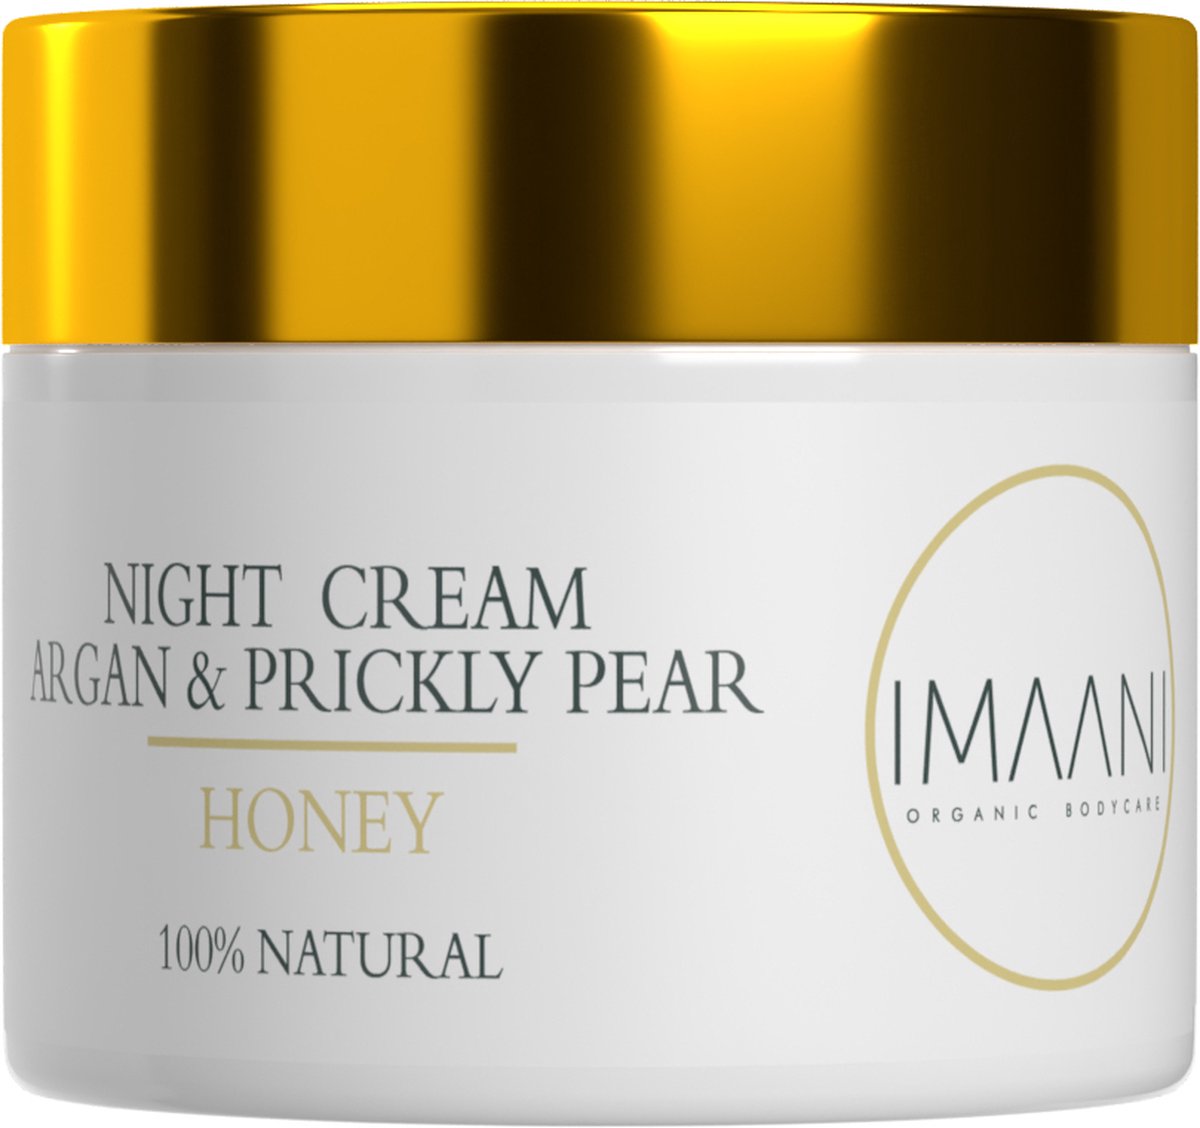 IMAANI - Nachtcrème Anti rimpels - 100% natuurlijk! - vertraagd huid veroudering - Alle huidtypes - argan olie, cactusvijg en honing